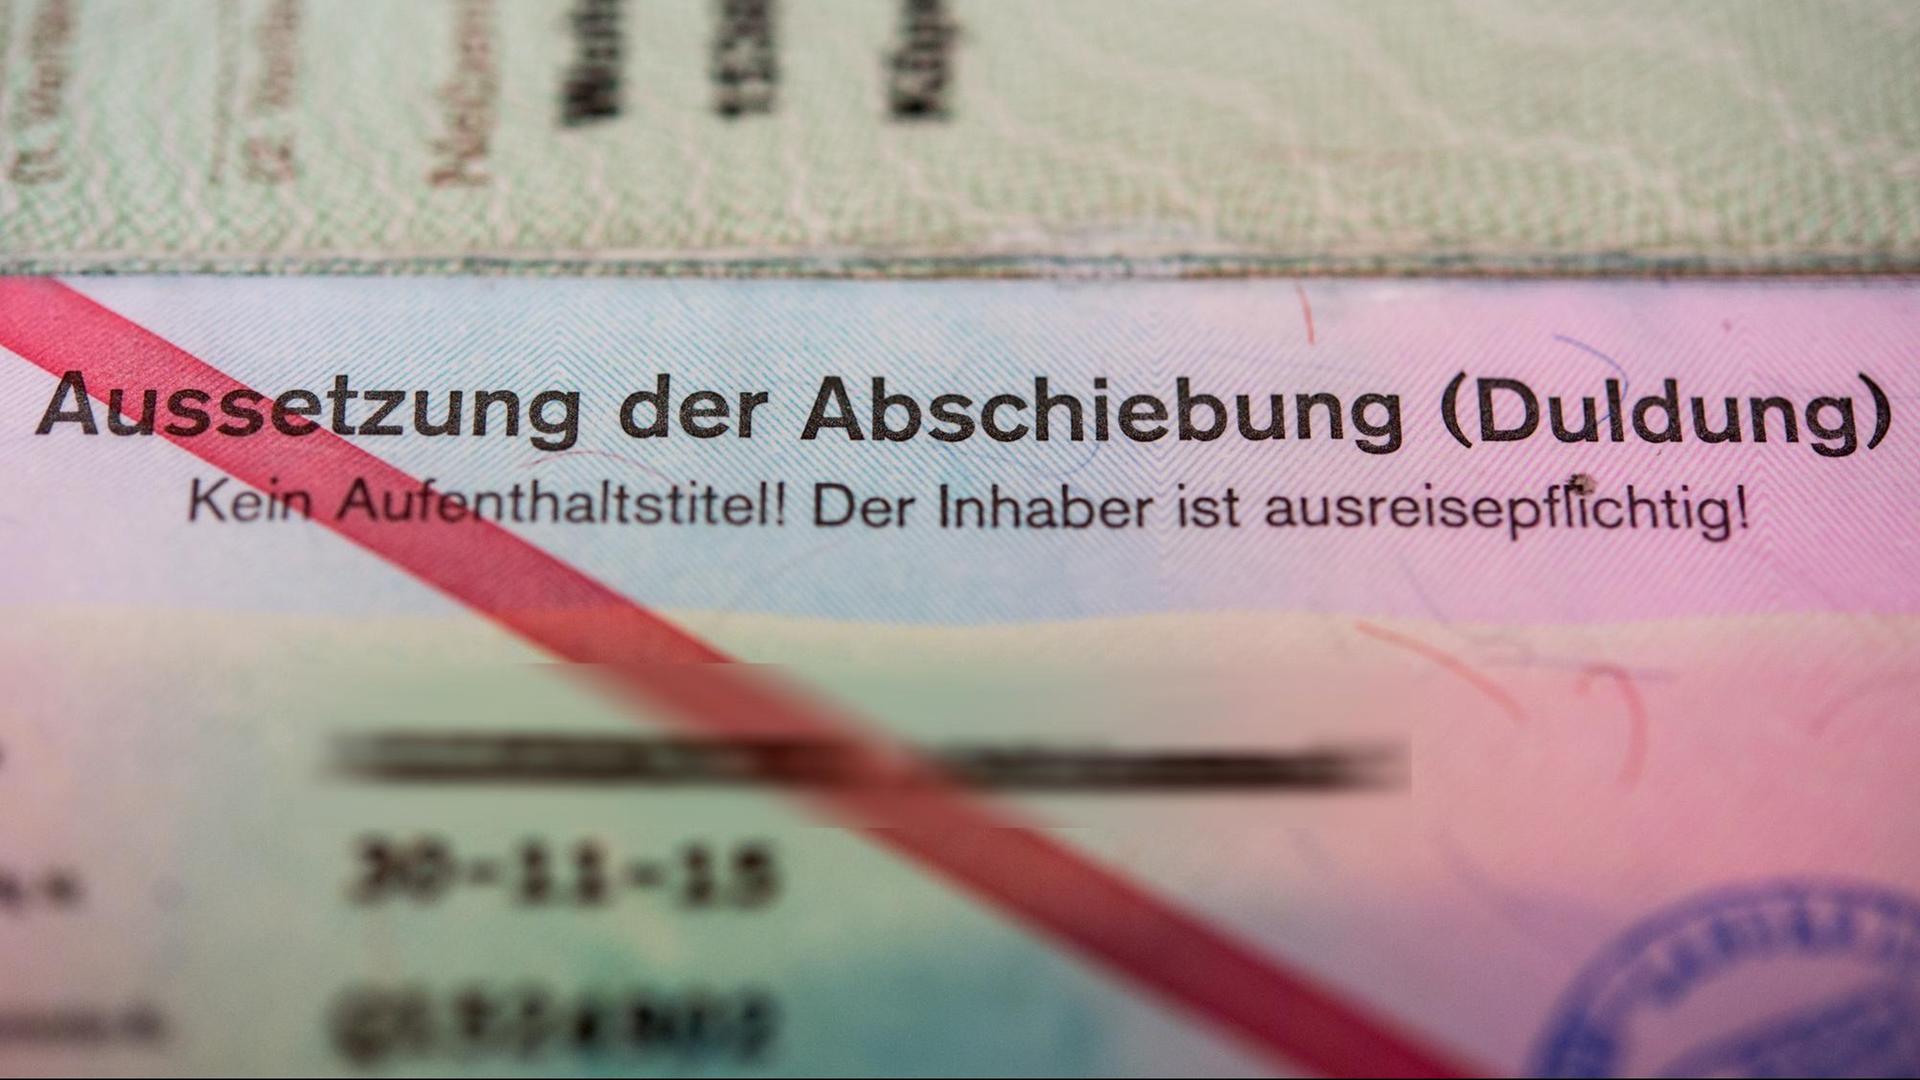 Ein Ausweis der Bundesrepublik Deutschland eines Asylbewerbers mit dem Vermerk «Aussetzung der Abschiebung (Duldung) - Kein Aufenthaltstitel! Der Inhaber ist ausreisepflichtig!», fotografiert am 09.10.2015 in Neuenhagen (Brandenburg).